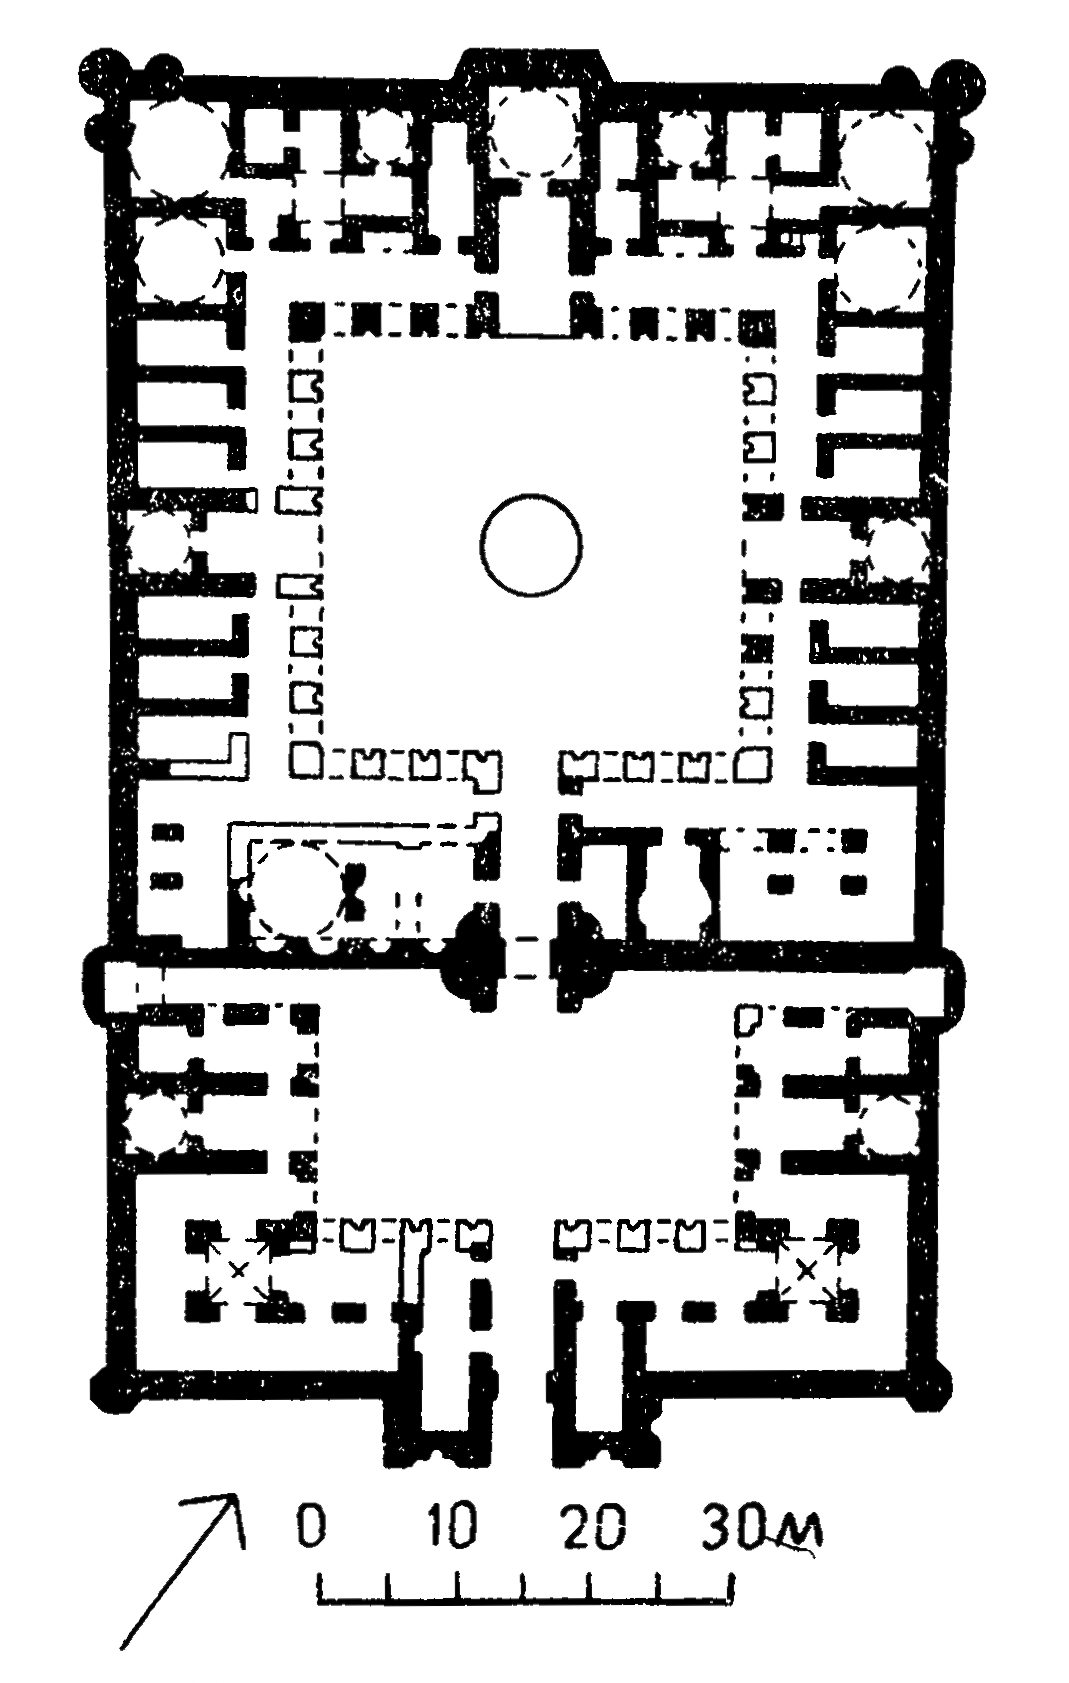 Караван-сарай Робате-Шараф в Хорасане, 1114—1115 г.